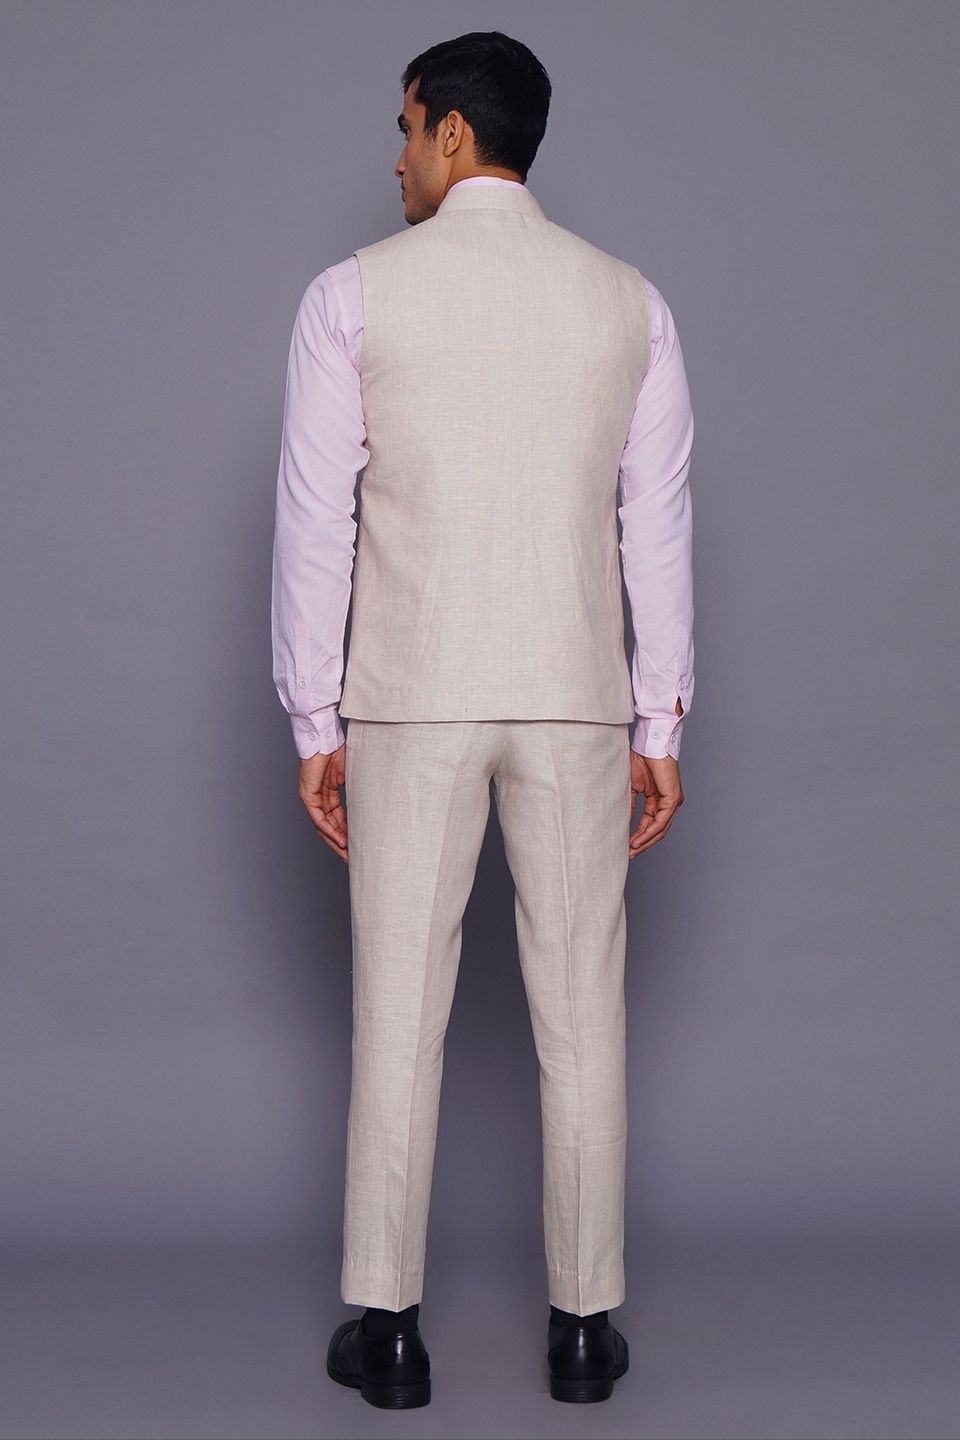 Wintage Men's Pure Linen  Vest & Pant Set: Natural